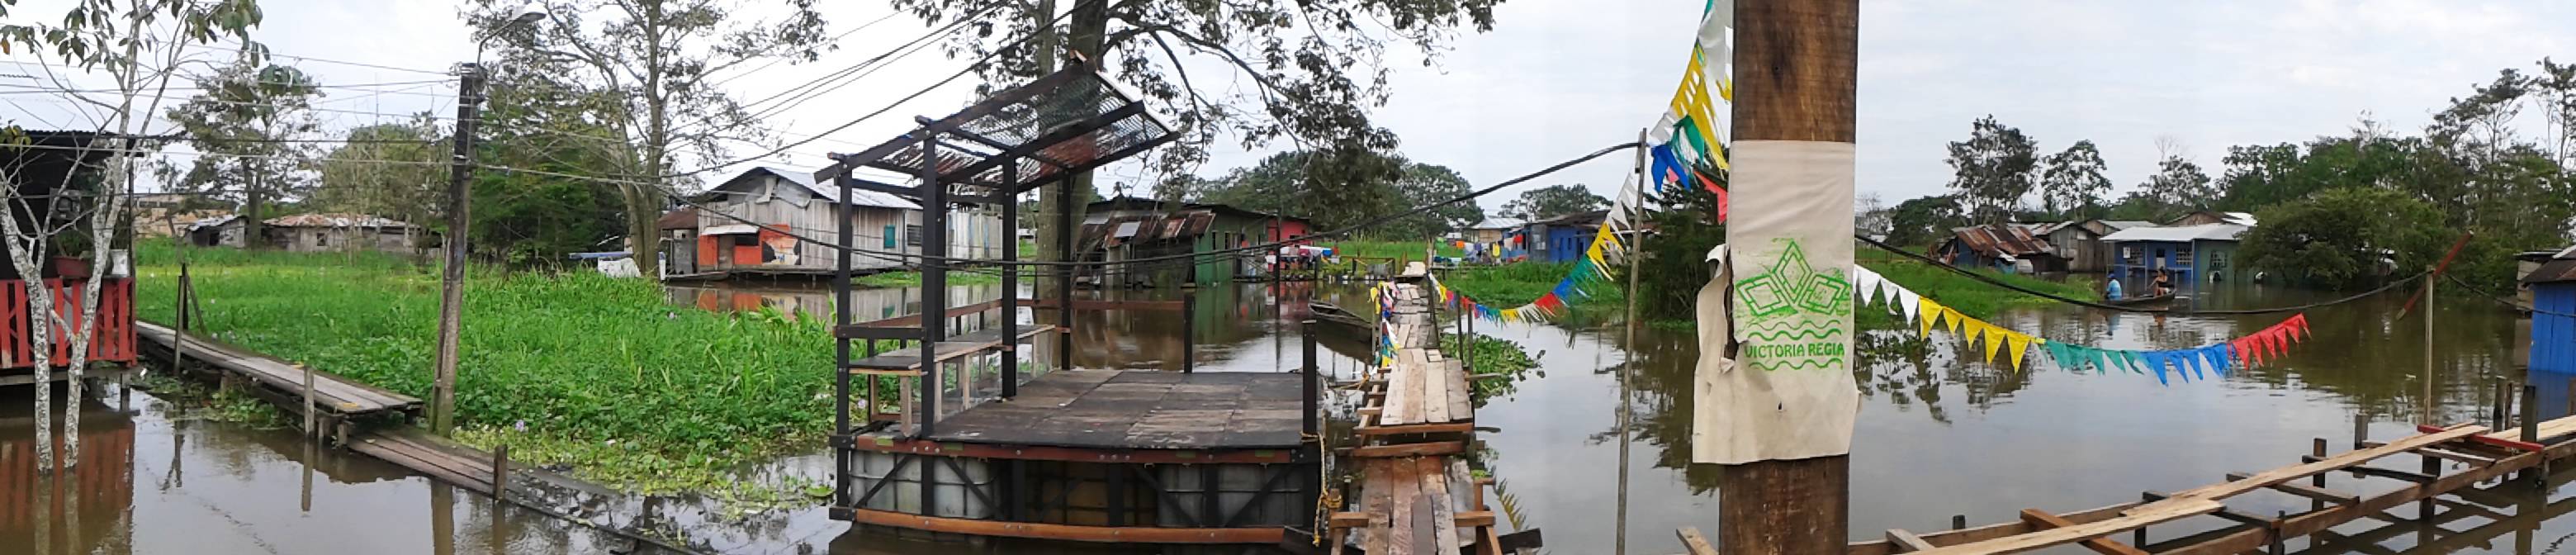 Espacio Público Flotante- Amazonas